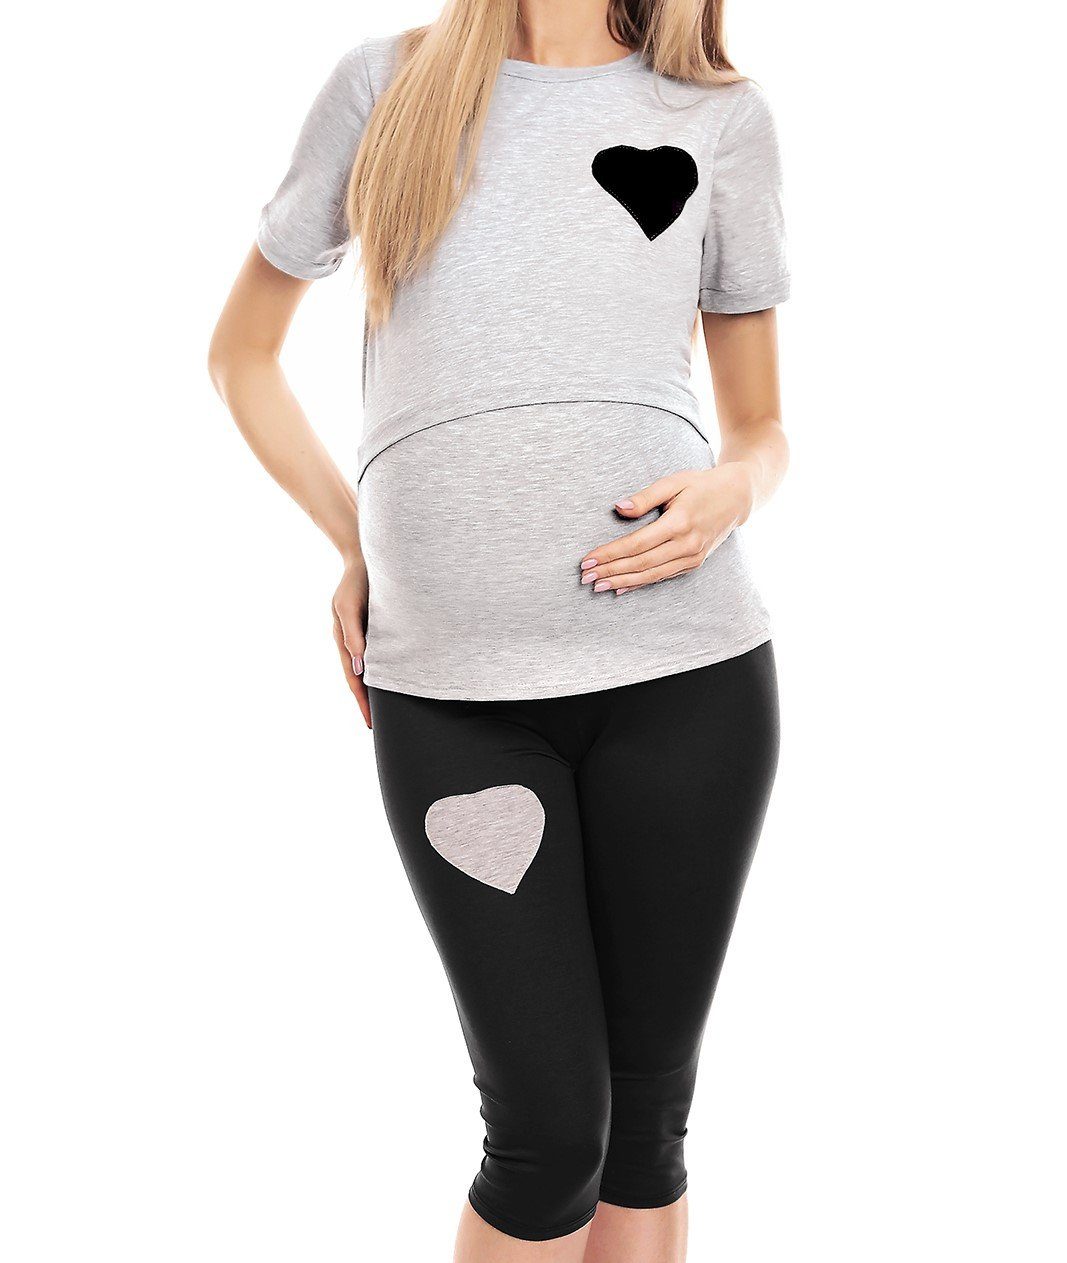 PeeKaBoo Schlafanzug Stillschlafanzug Schwangerschaft Stillen Umstandspyjama grau/schwarz